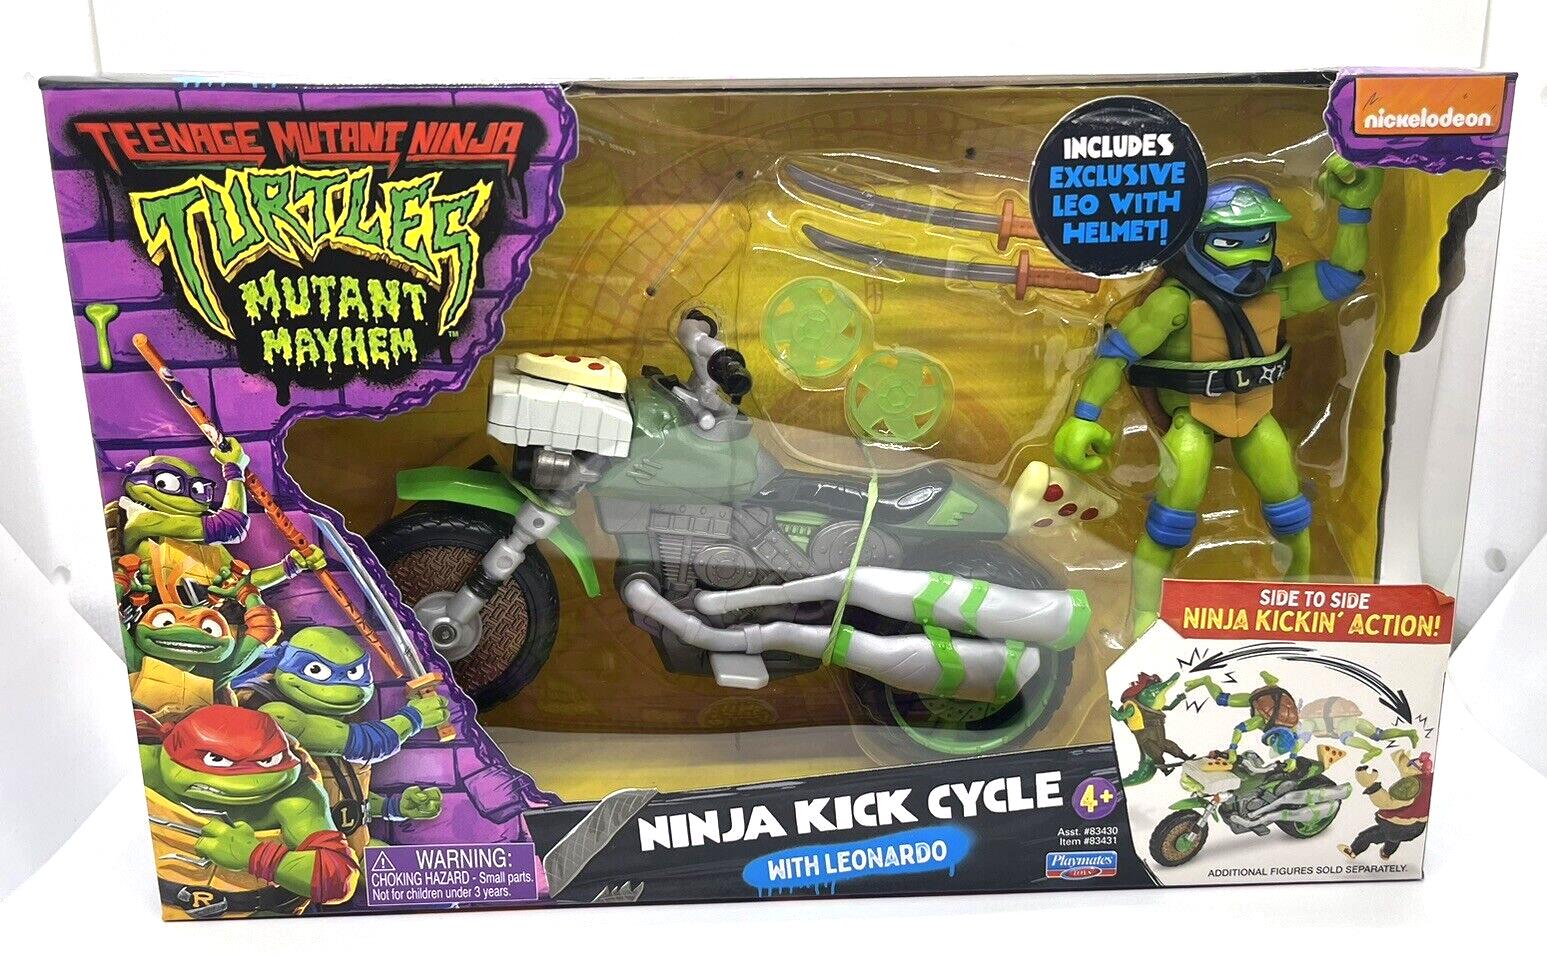 Teenage Mutant Ninja Turtles Mutant Mayhem Ninja Kick Cycle with Leonardo